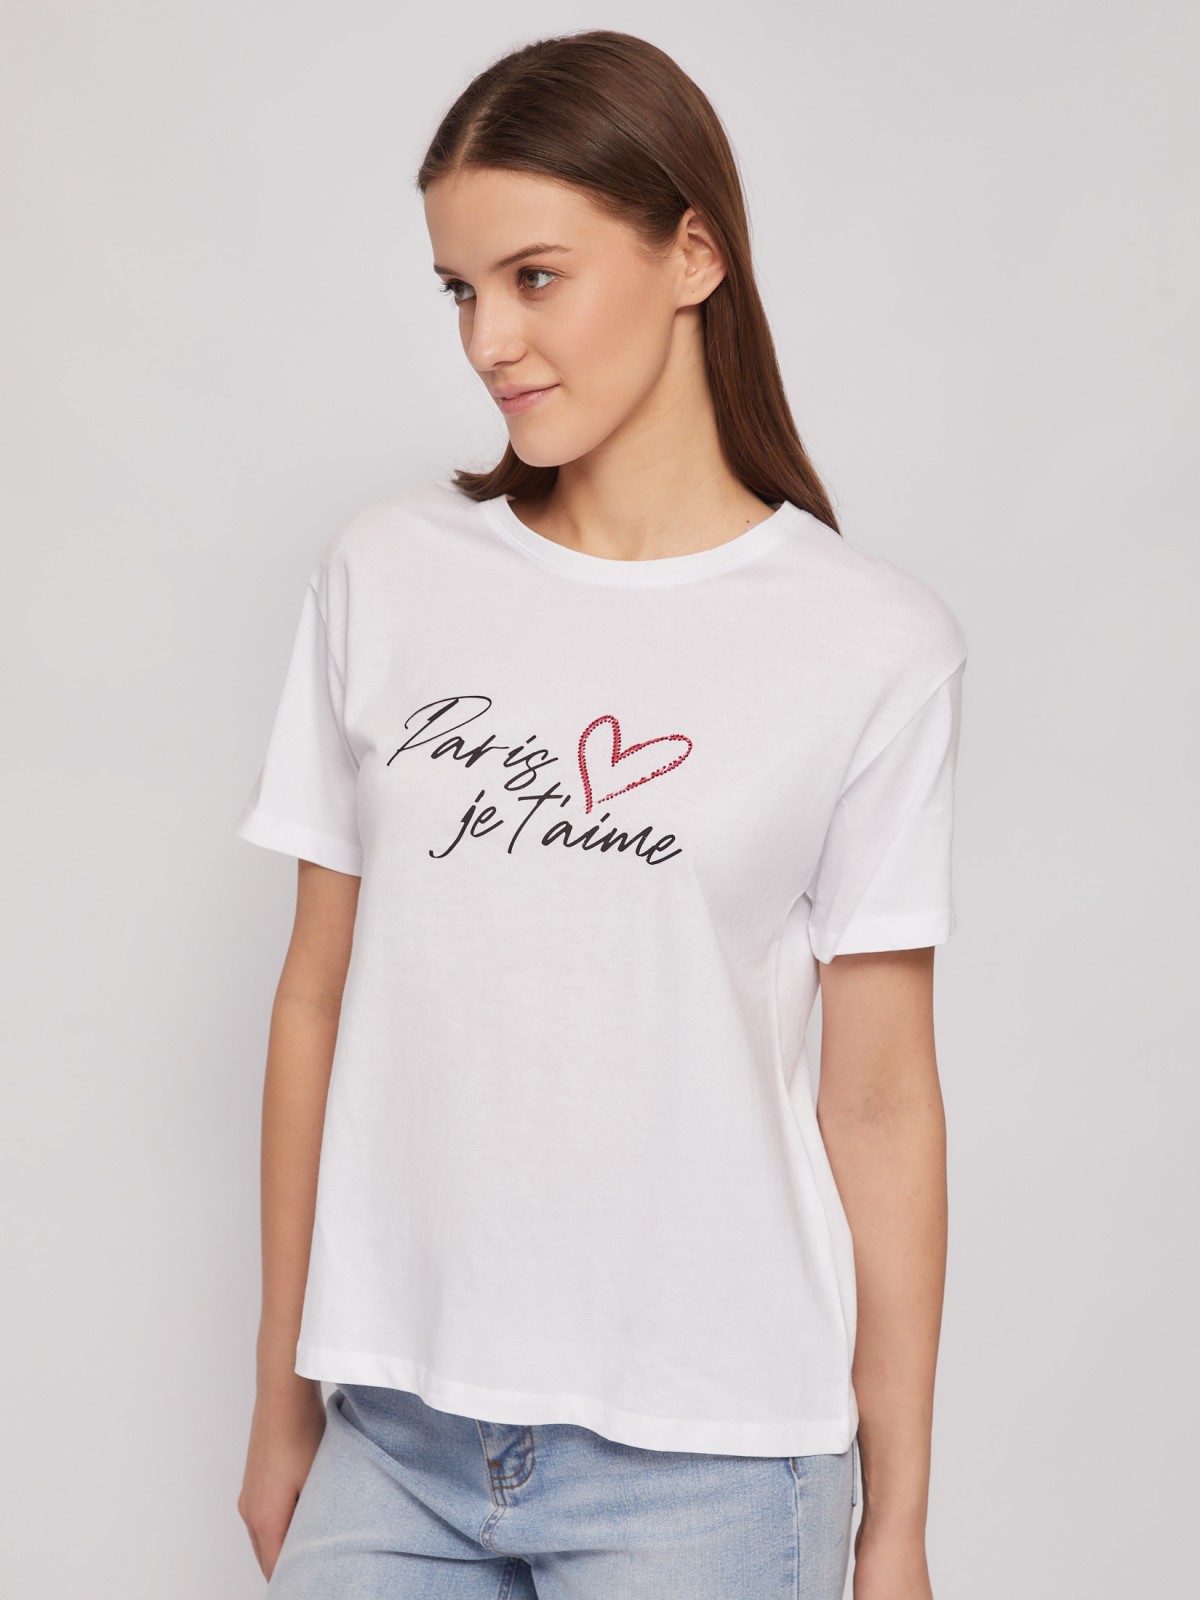 Трикотажная футболка из хлопка с принтом-надписью zolla 024223238653, цвет белый, размер S - фото 5